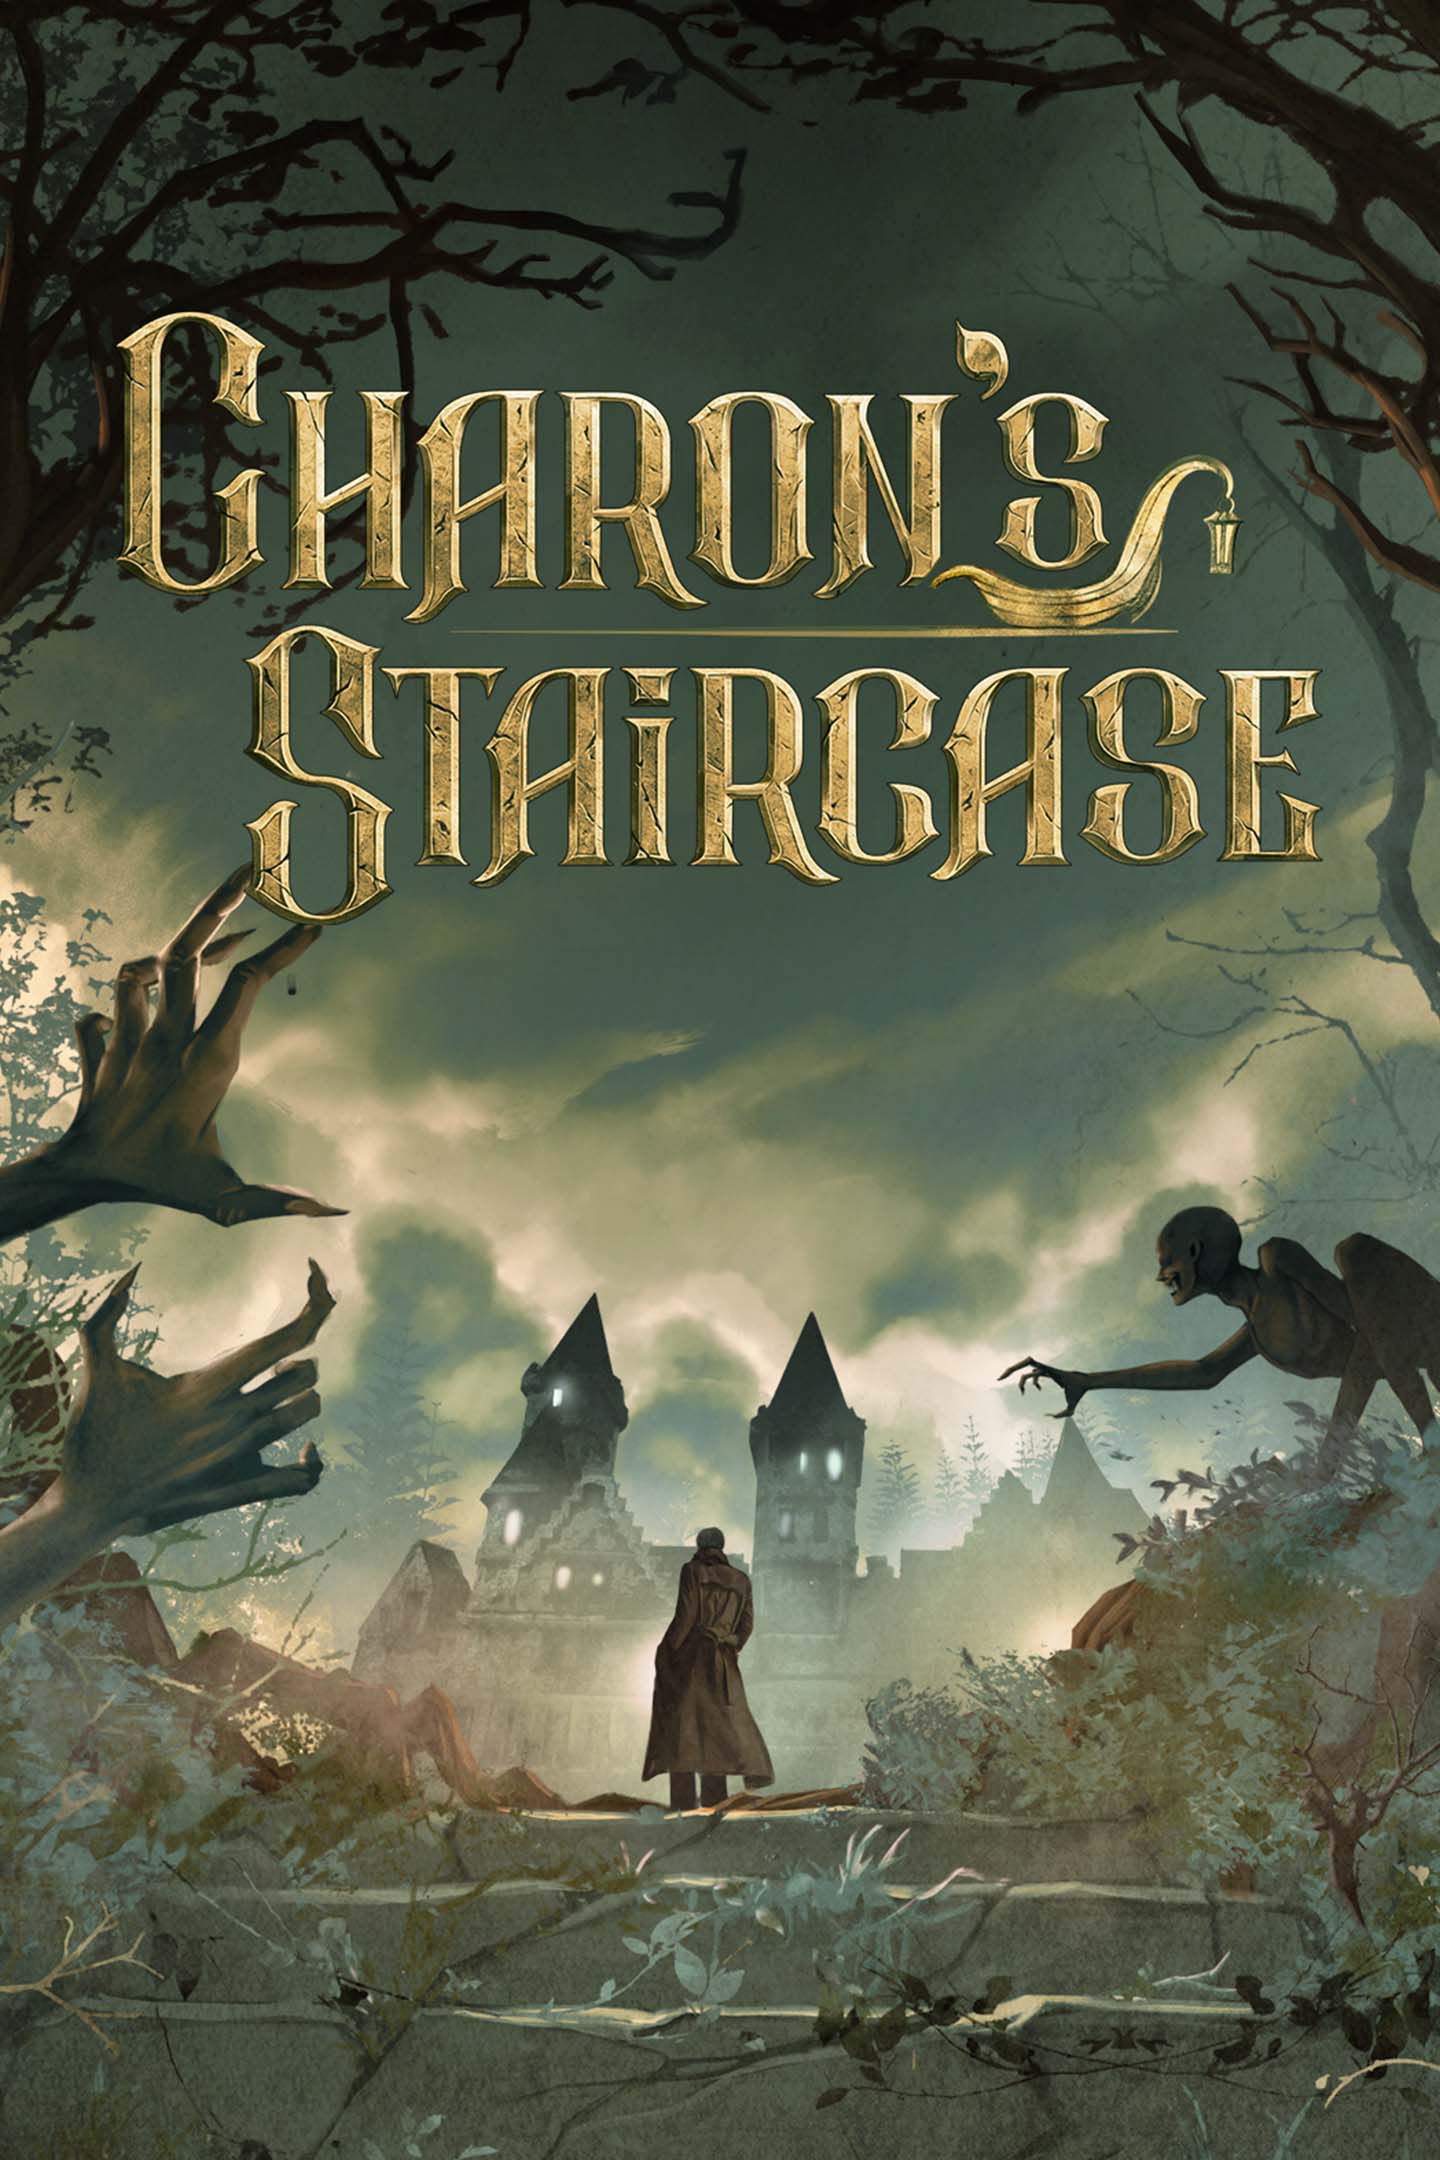 Teaser trailer de Charon's Staircase, novo jogo de terror em